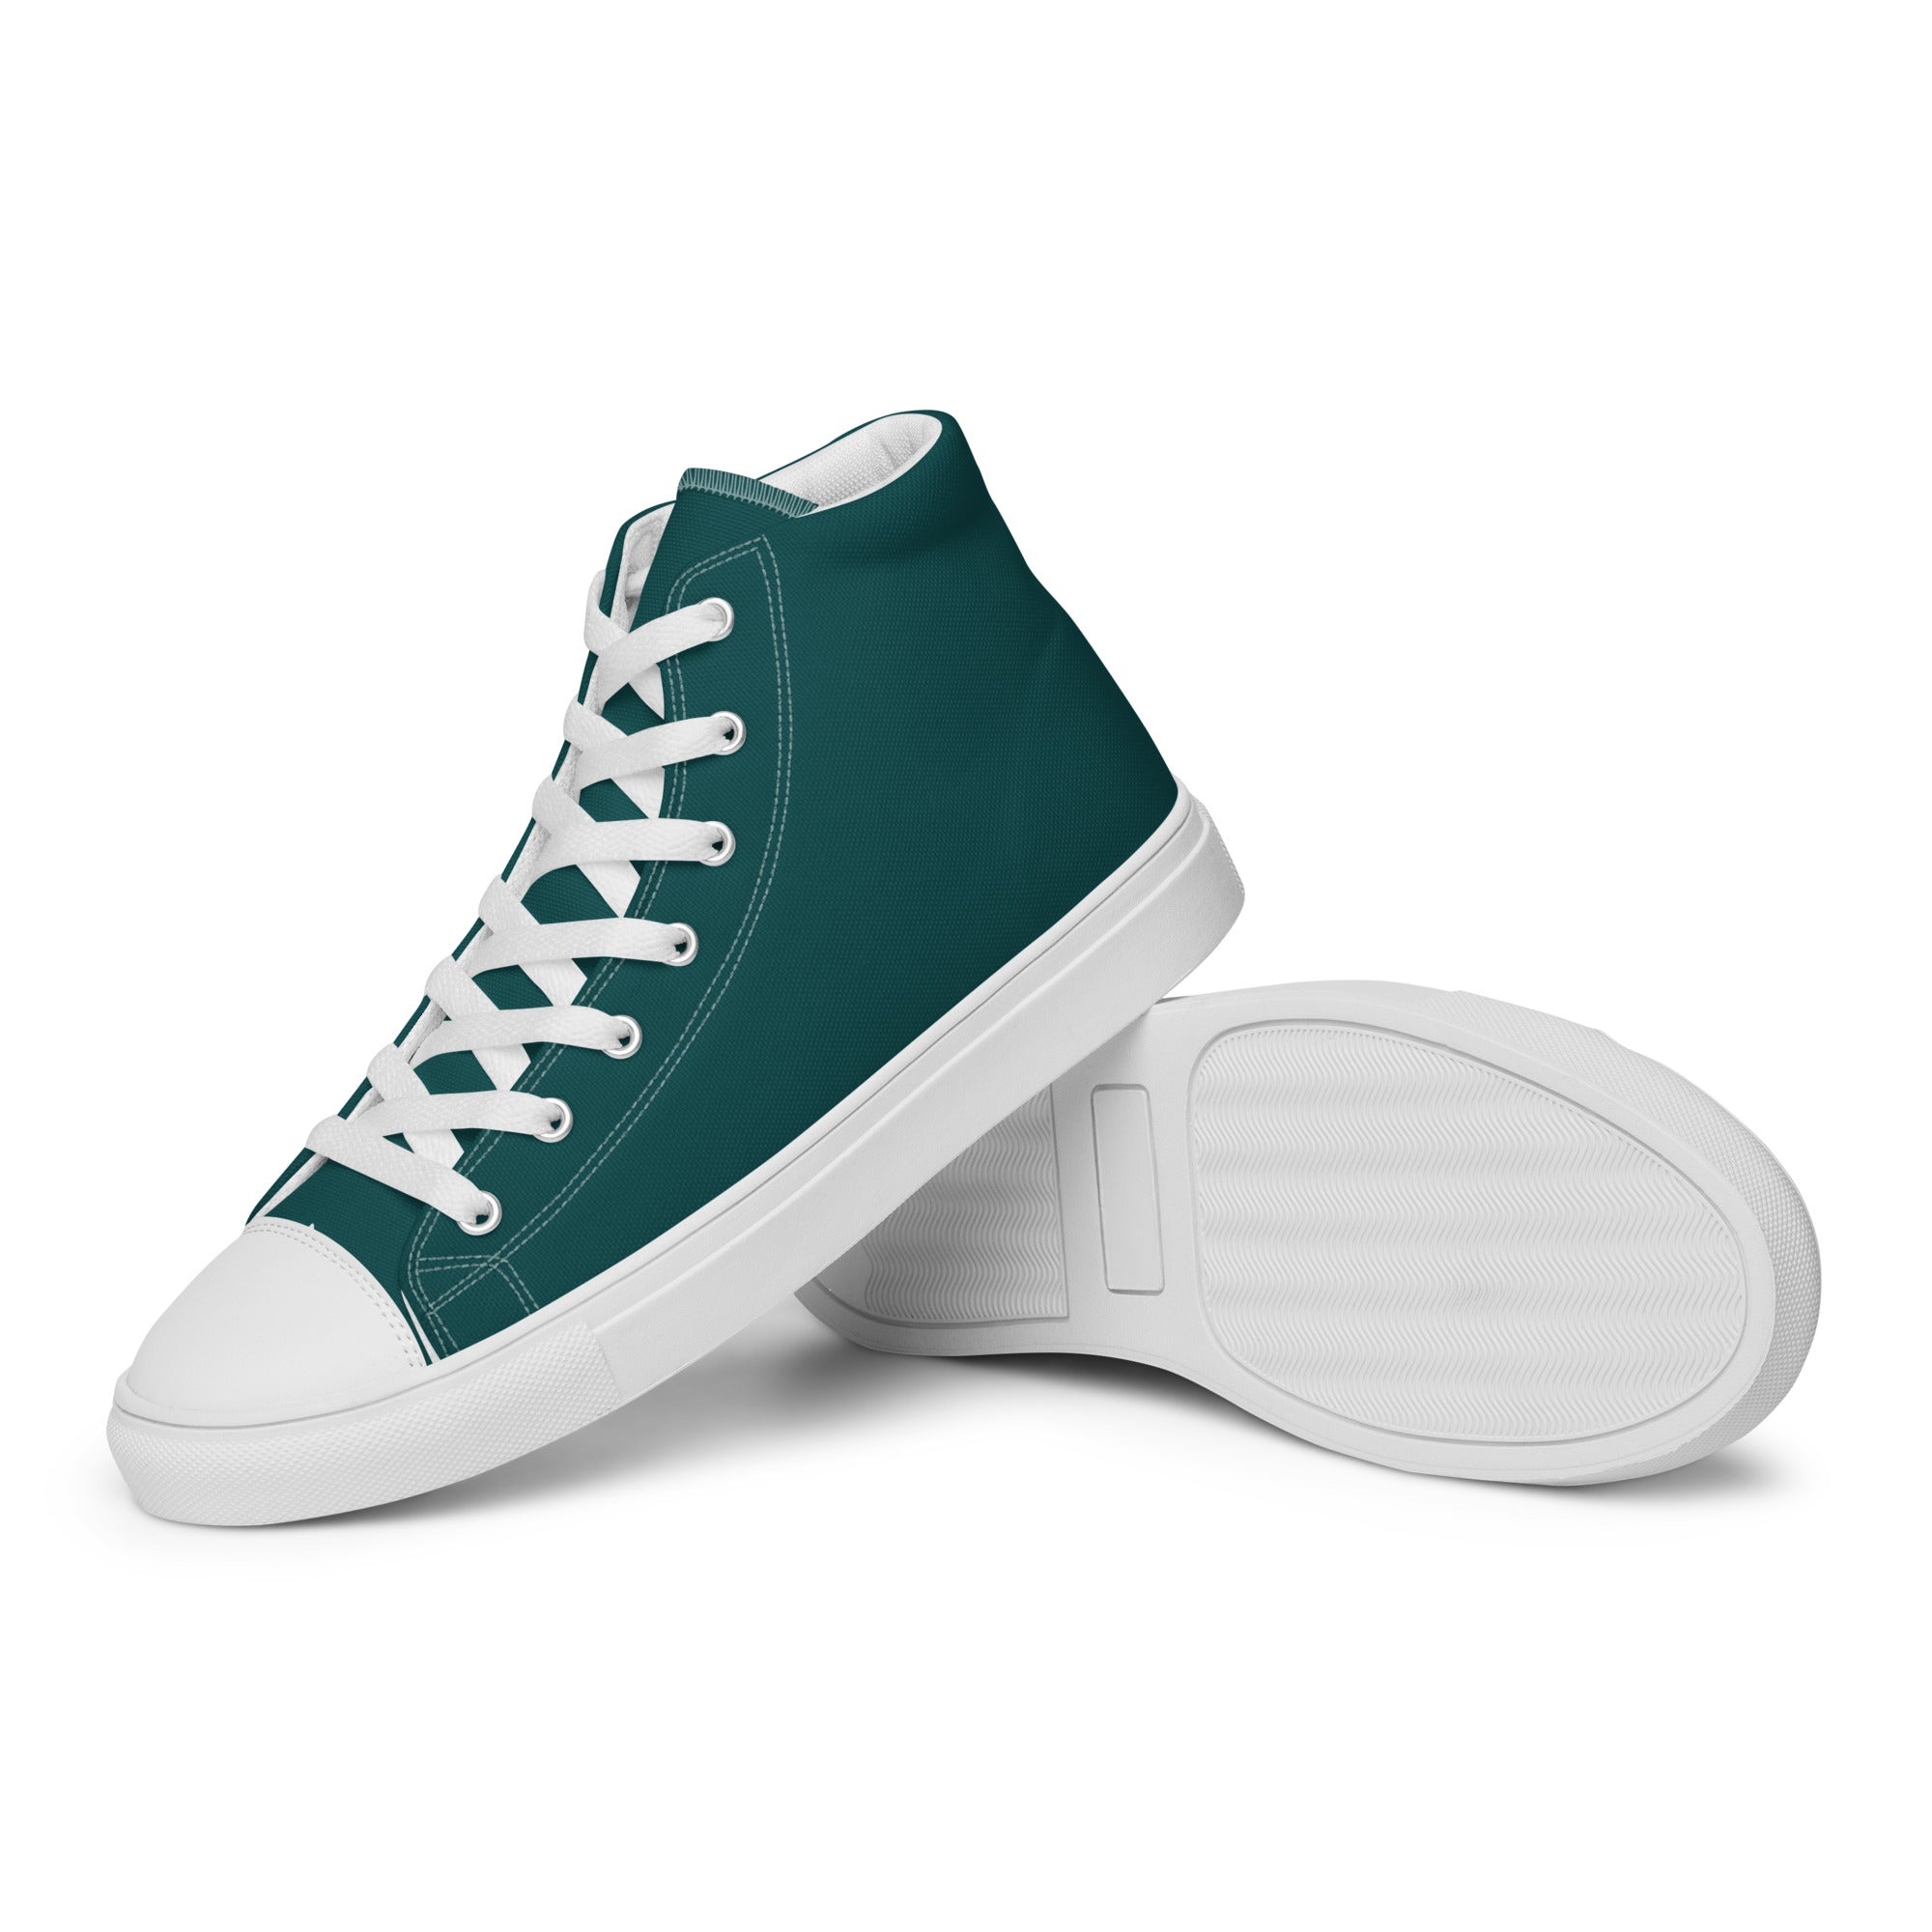 Buy Men's Olive Green Sneakers Online in India at Bewakoof